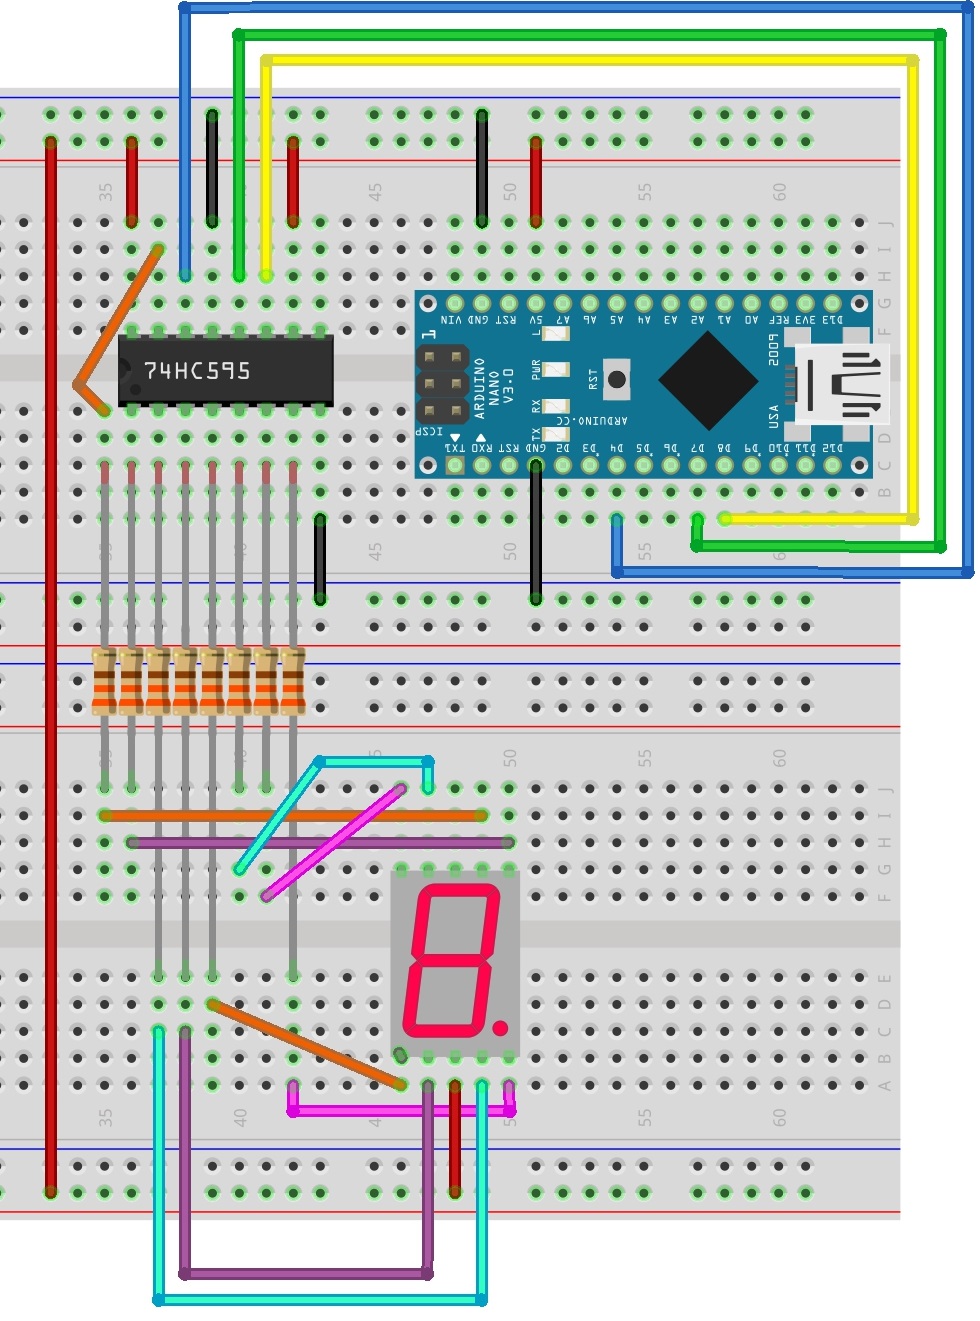 74hc595 arduino 7 segment code